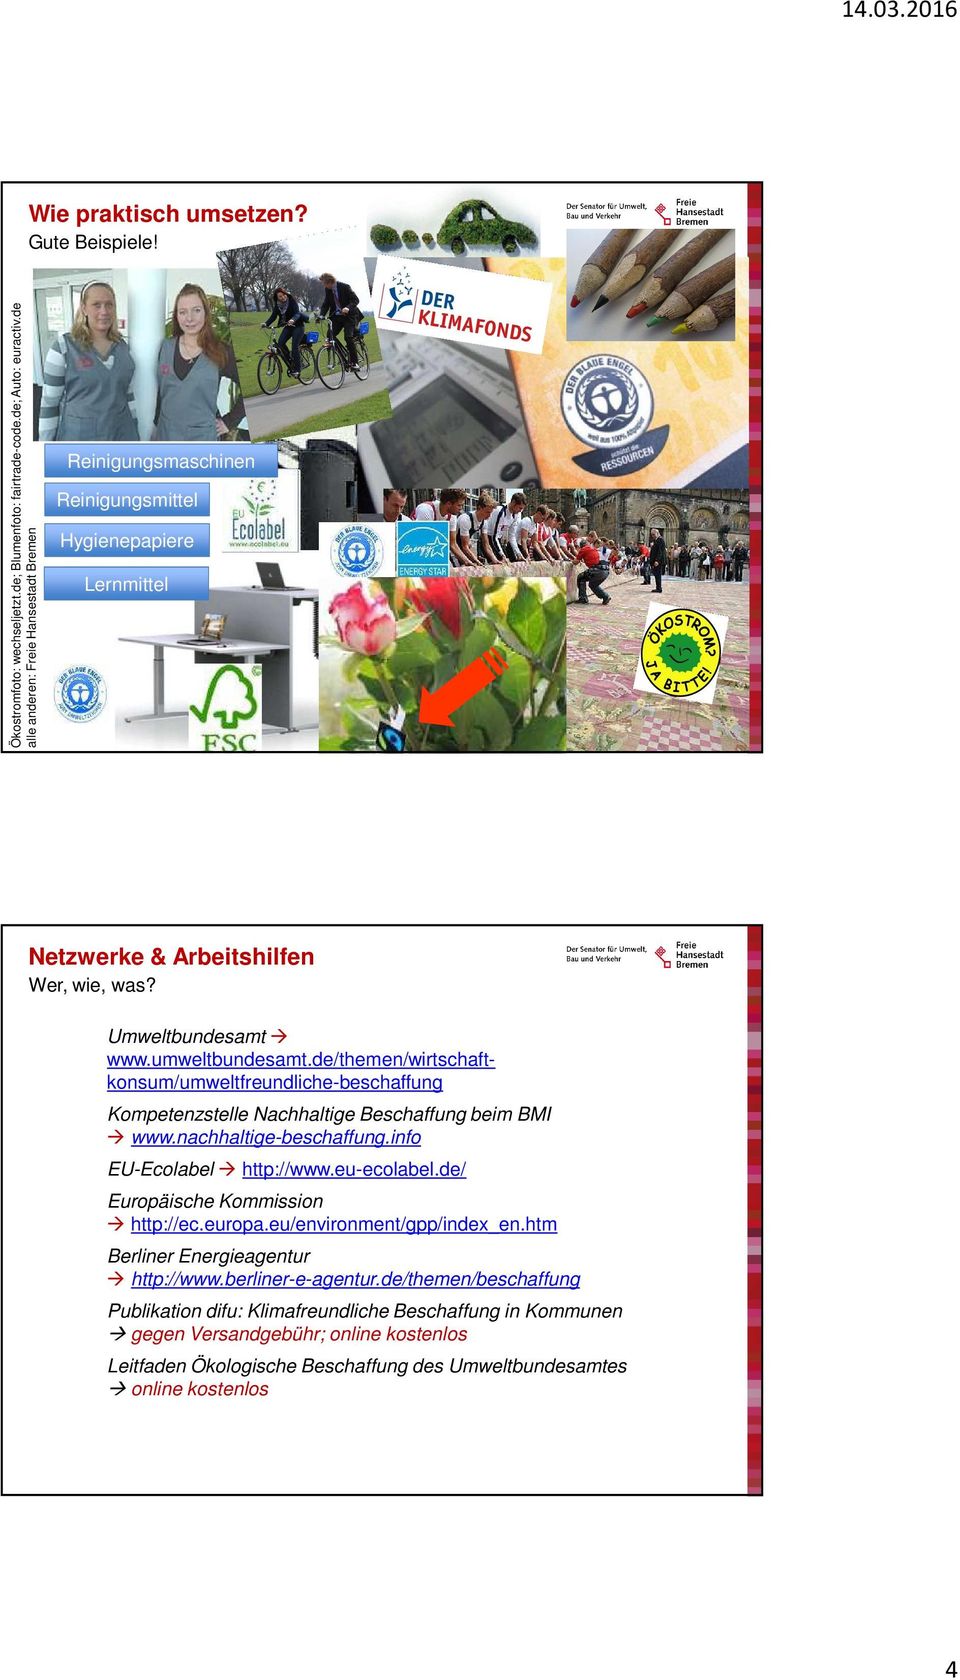 de/themen/wirtschaftkonsum/umweltfreundliche-beschaffung Kompetenzstelle Nachhaltige Beschaffung beim BMI www.nachhaltige-beschaffung.info EU-Ecolabel http://www.eu-ecolabel.